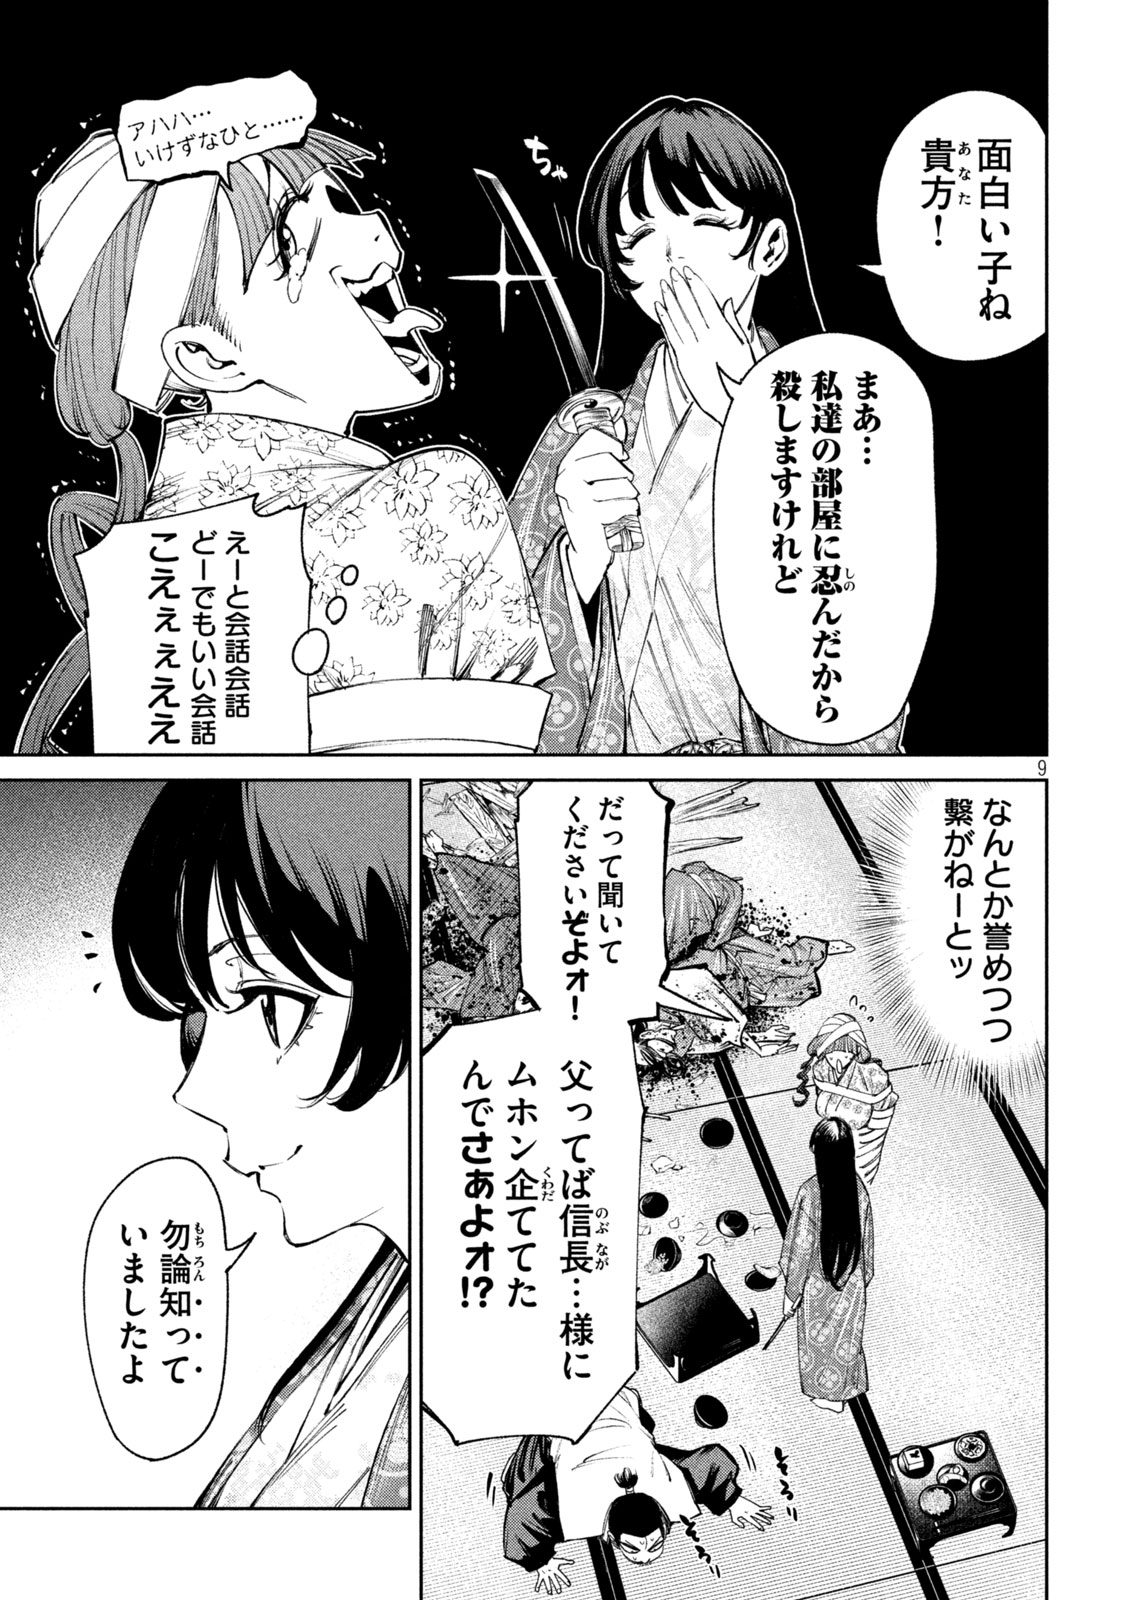 Nando toki o kurikaeshitemo Honnouji ga moerunjaga! - Chapter 125 - Page 9